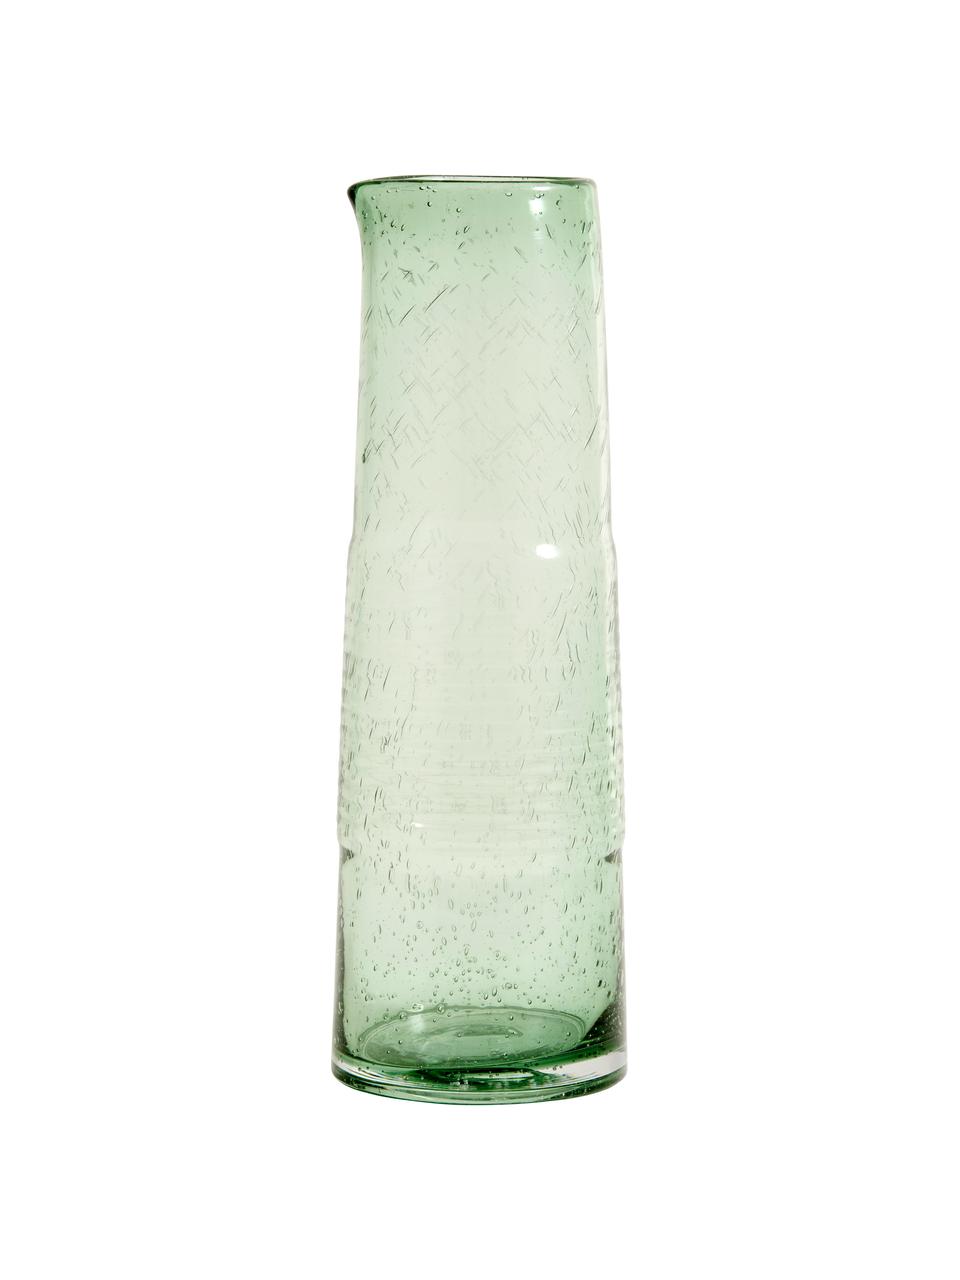 Ručně foukaná skleněná karafa Greenie, 1,3 l, Recyklované sklo, Zelená, Ø 8cm, V 30 cm. 1.3 l